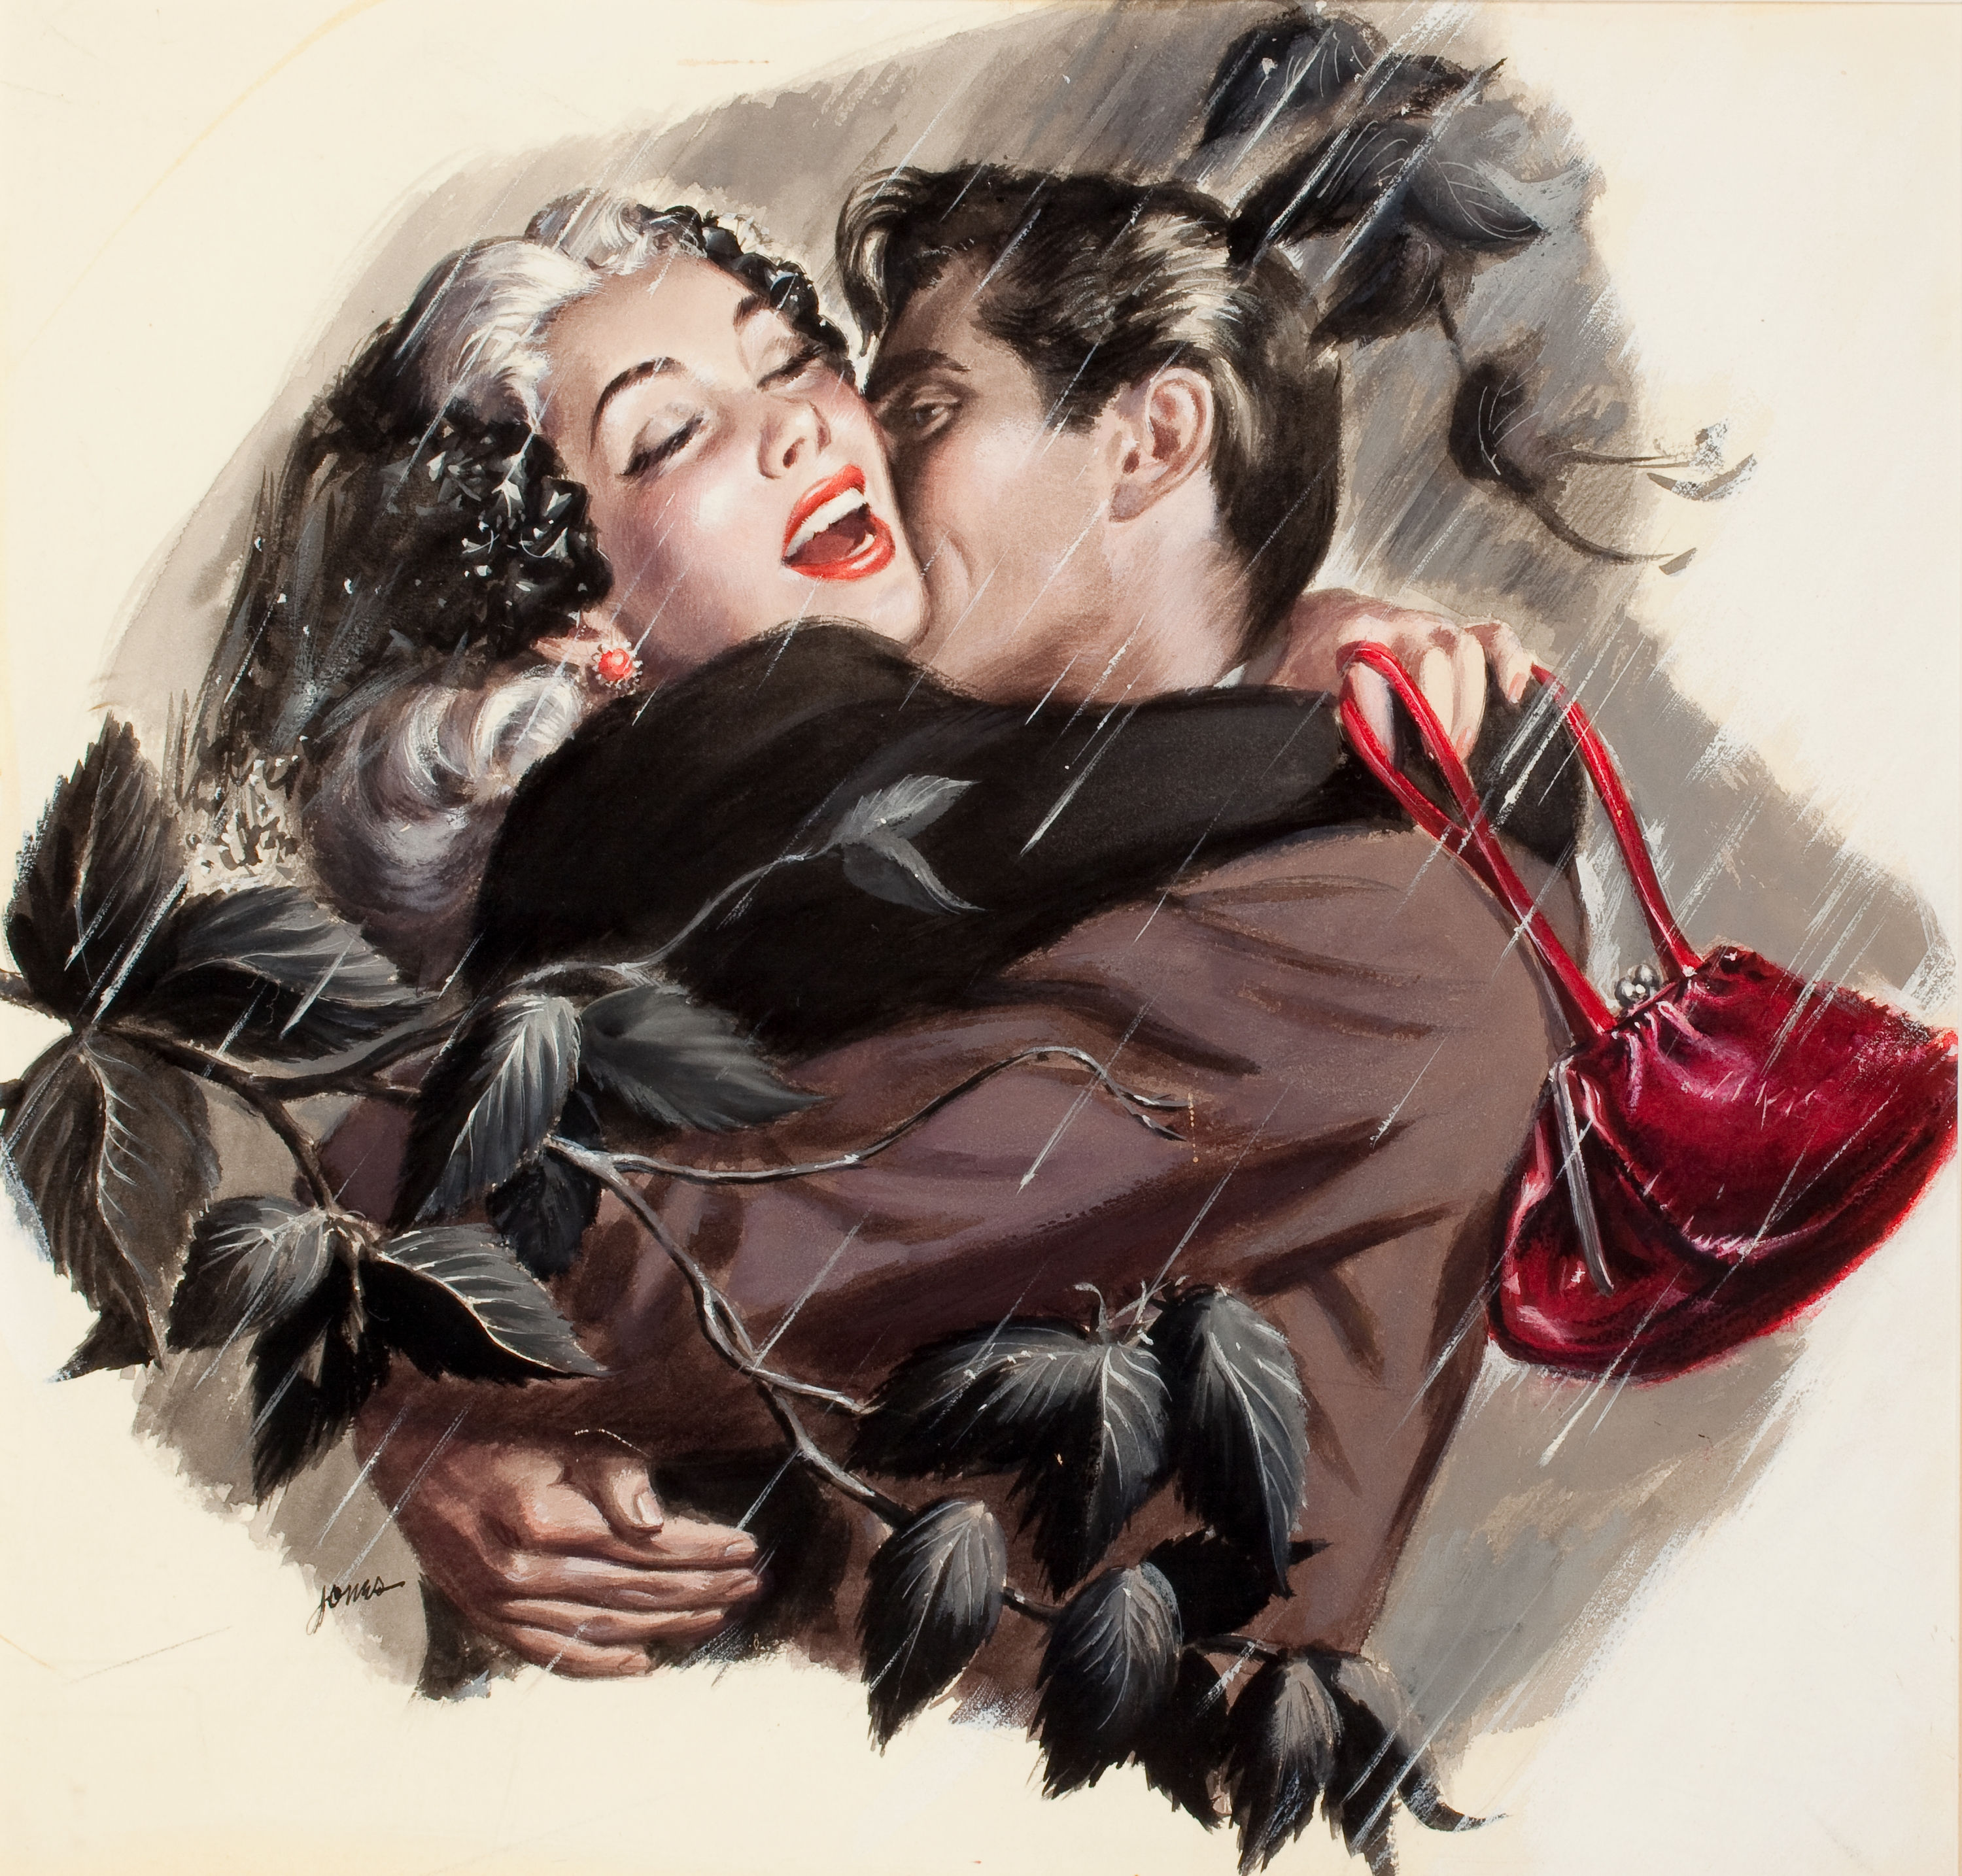 Поцелуй для любимой картинки. Ретро открытки любовные. Картина с поцелуйчиками. Красивые открытки мужчина и женщина. Красивые романтичные открытки.